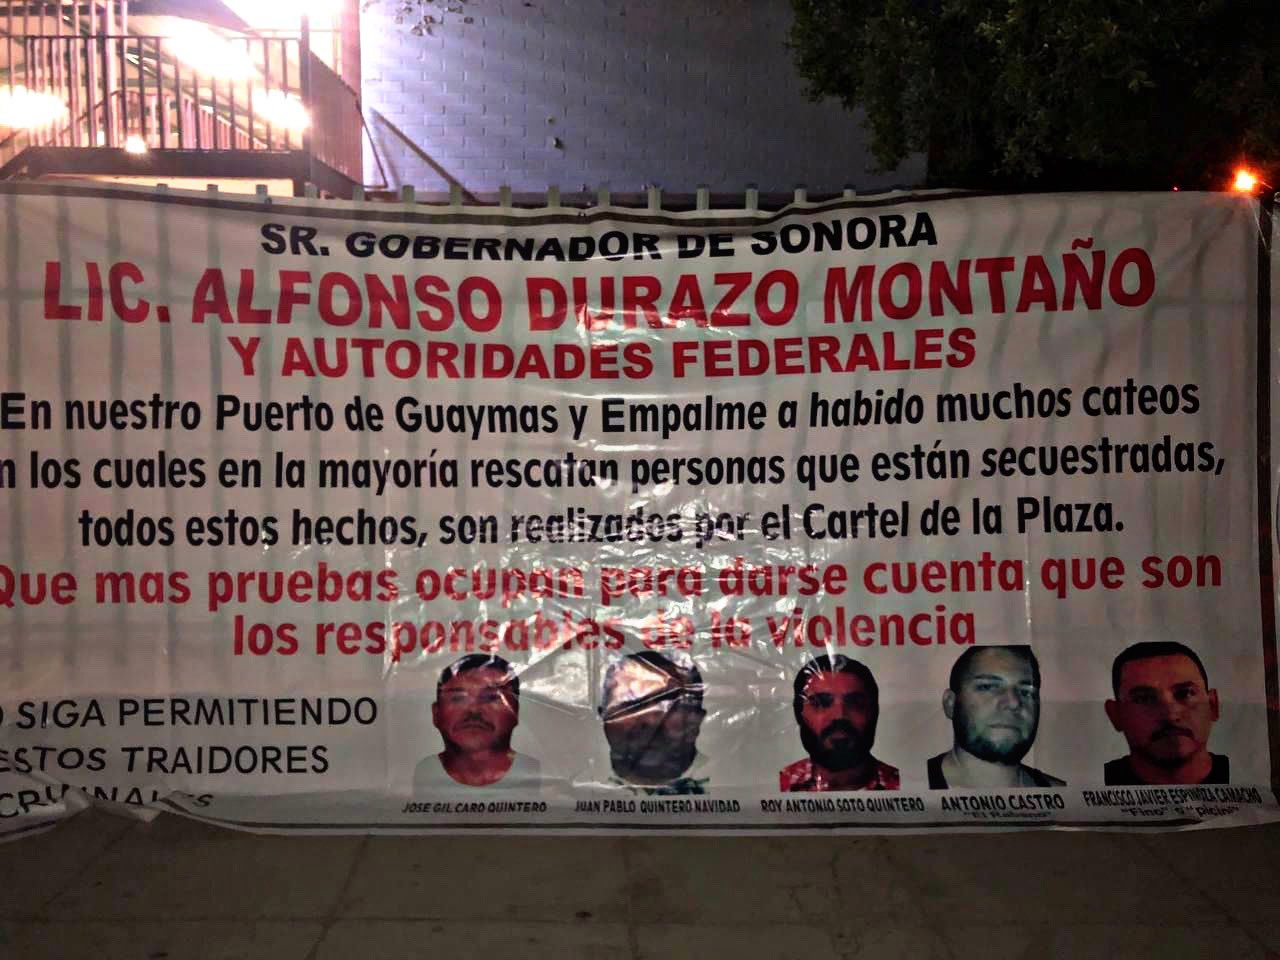 “Son los responsables de la violencia”: el inquietante mensaje del narco al gobernador de Sonora